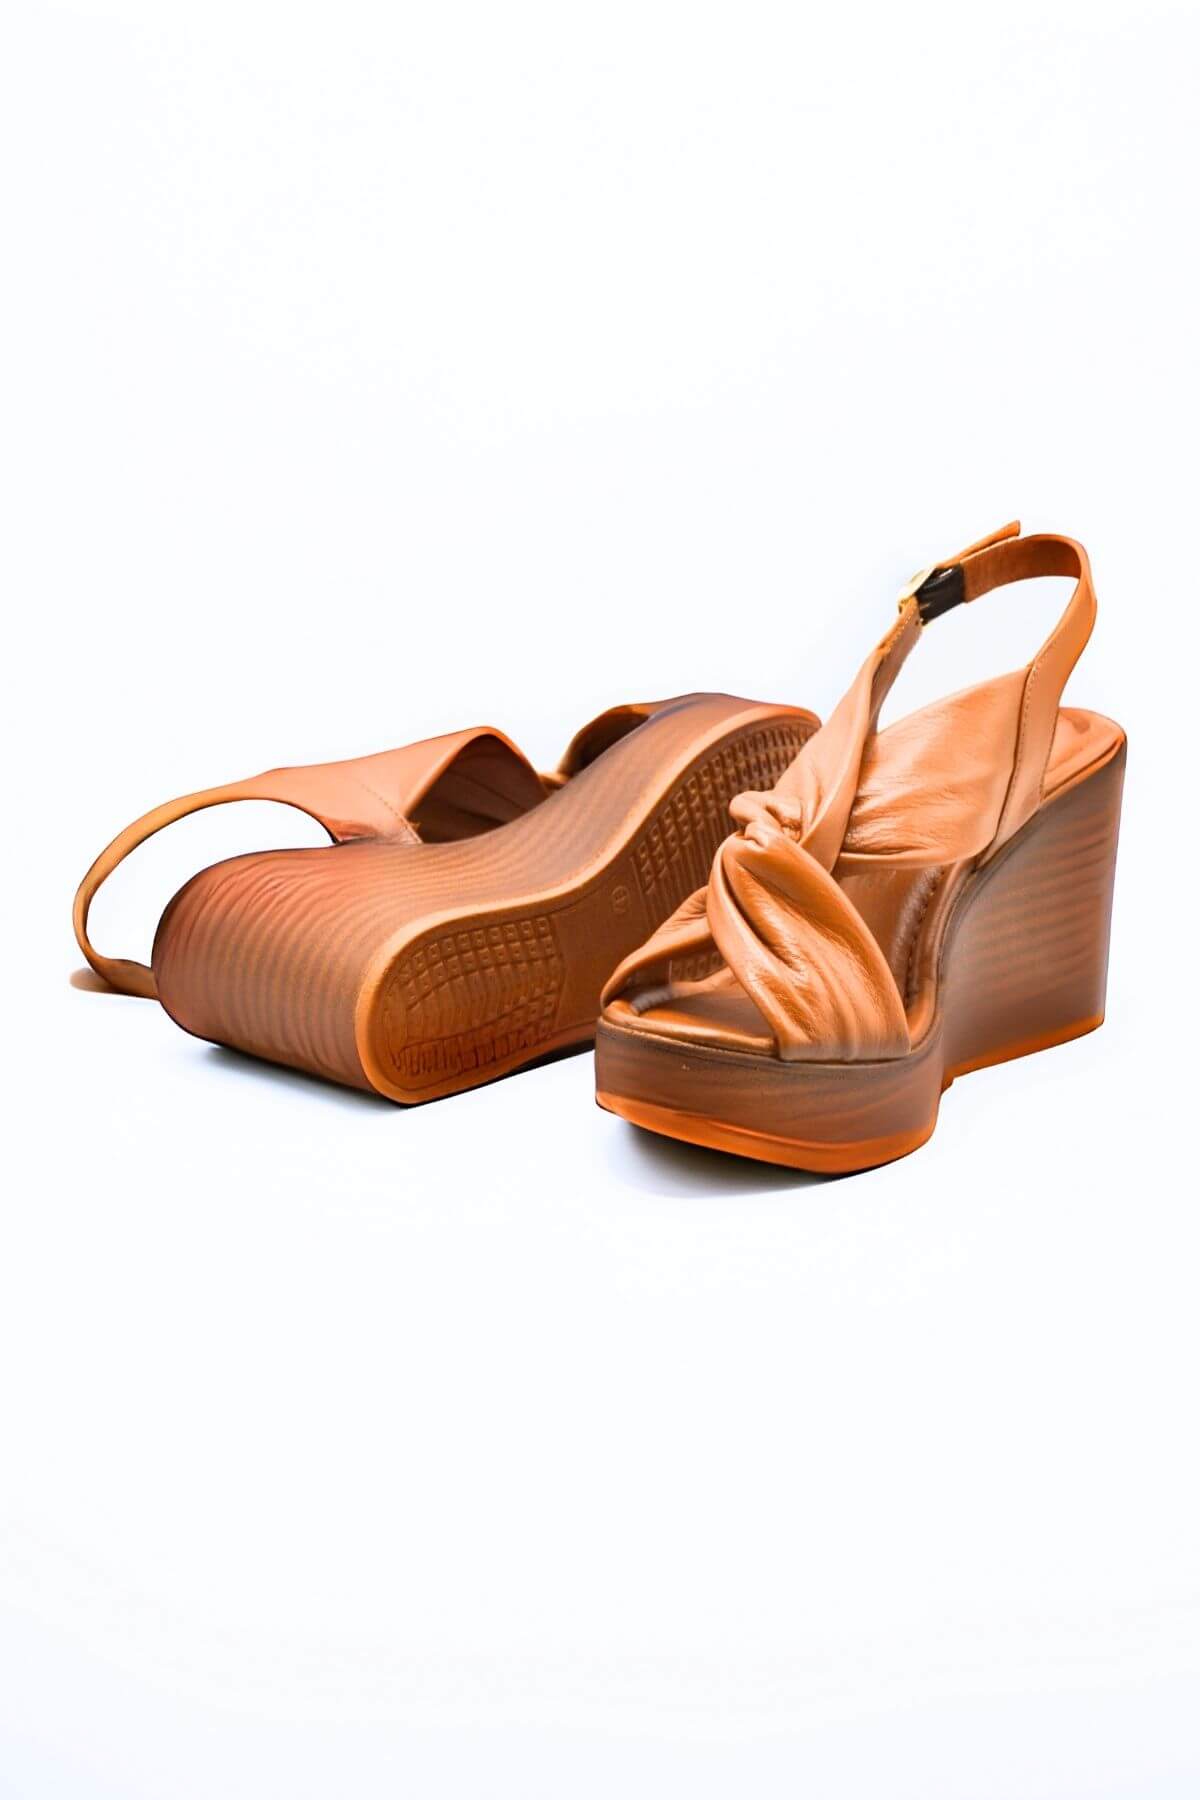 Kadın Dolgu Topuk Deri Sandalet Taba 2310803Y - Thumbnail